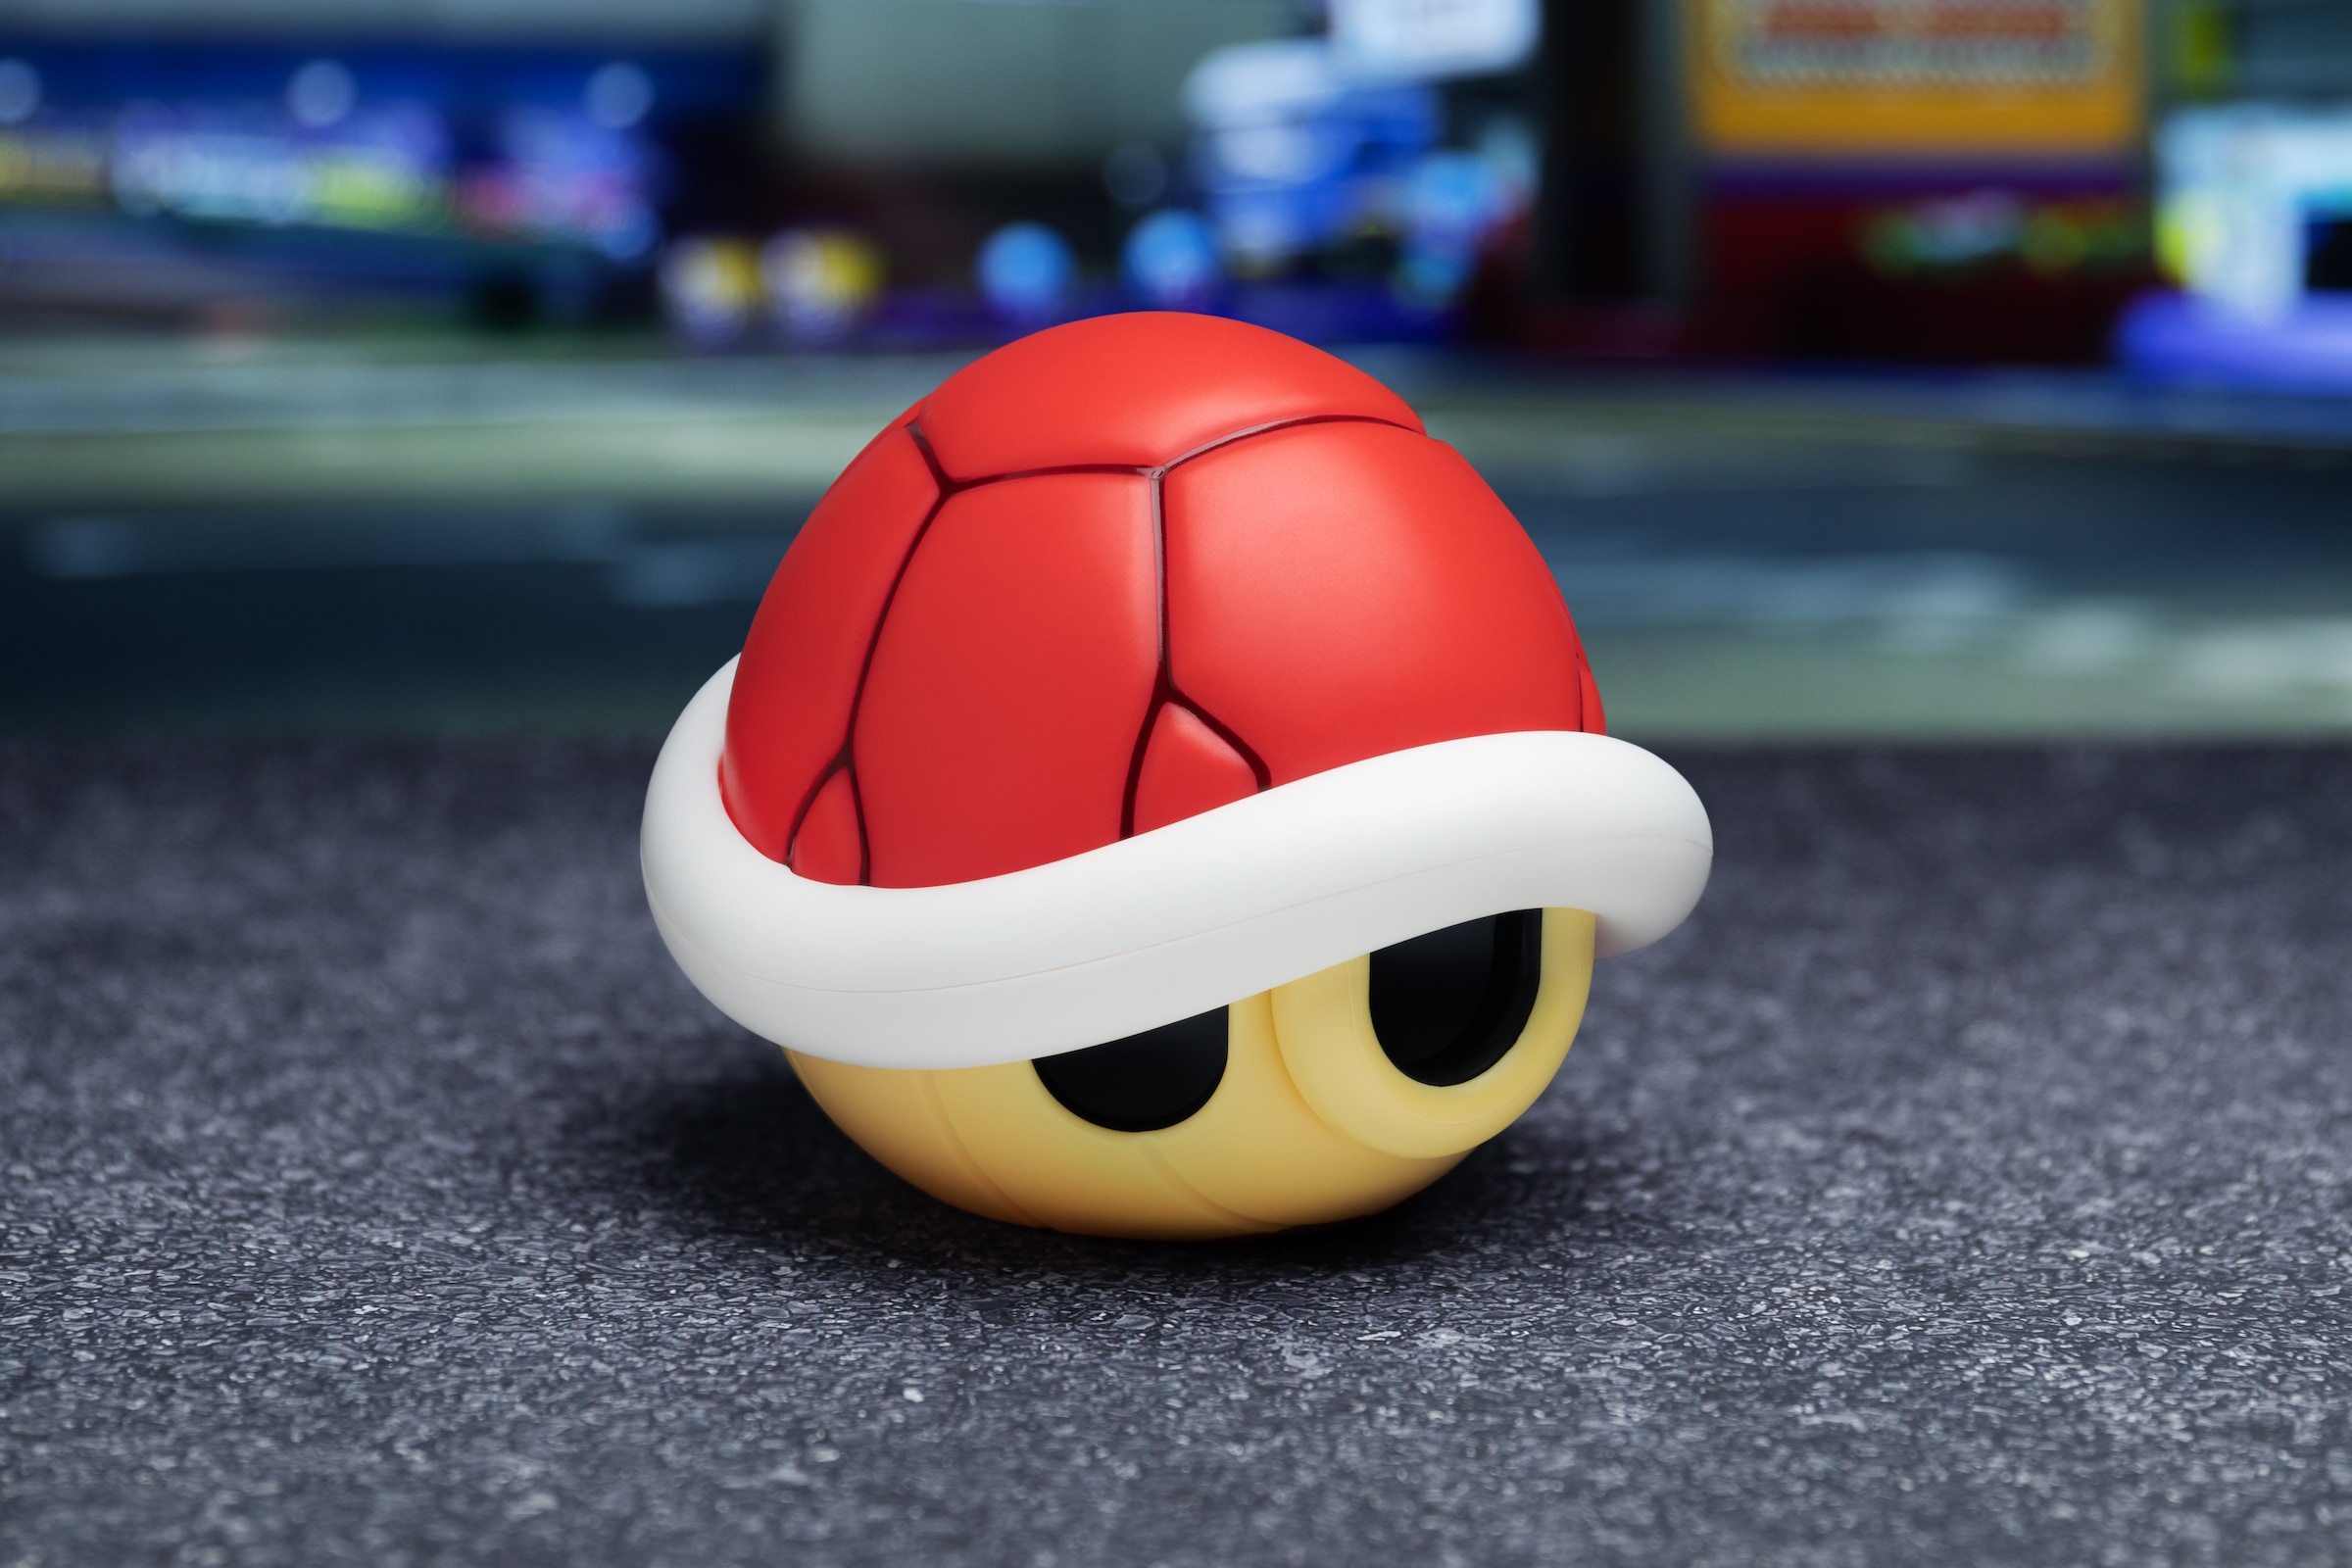 Paladone LED Dekolicht »Mario Kart roter Panzer Leuchte mit Sound«